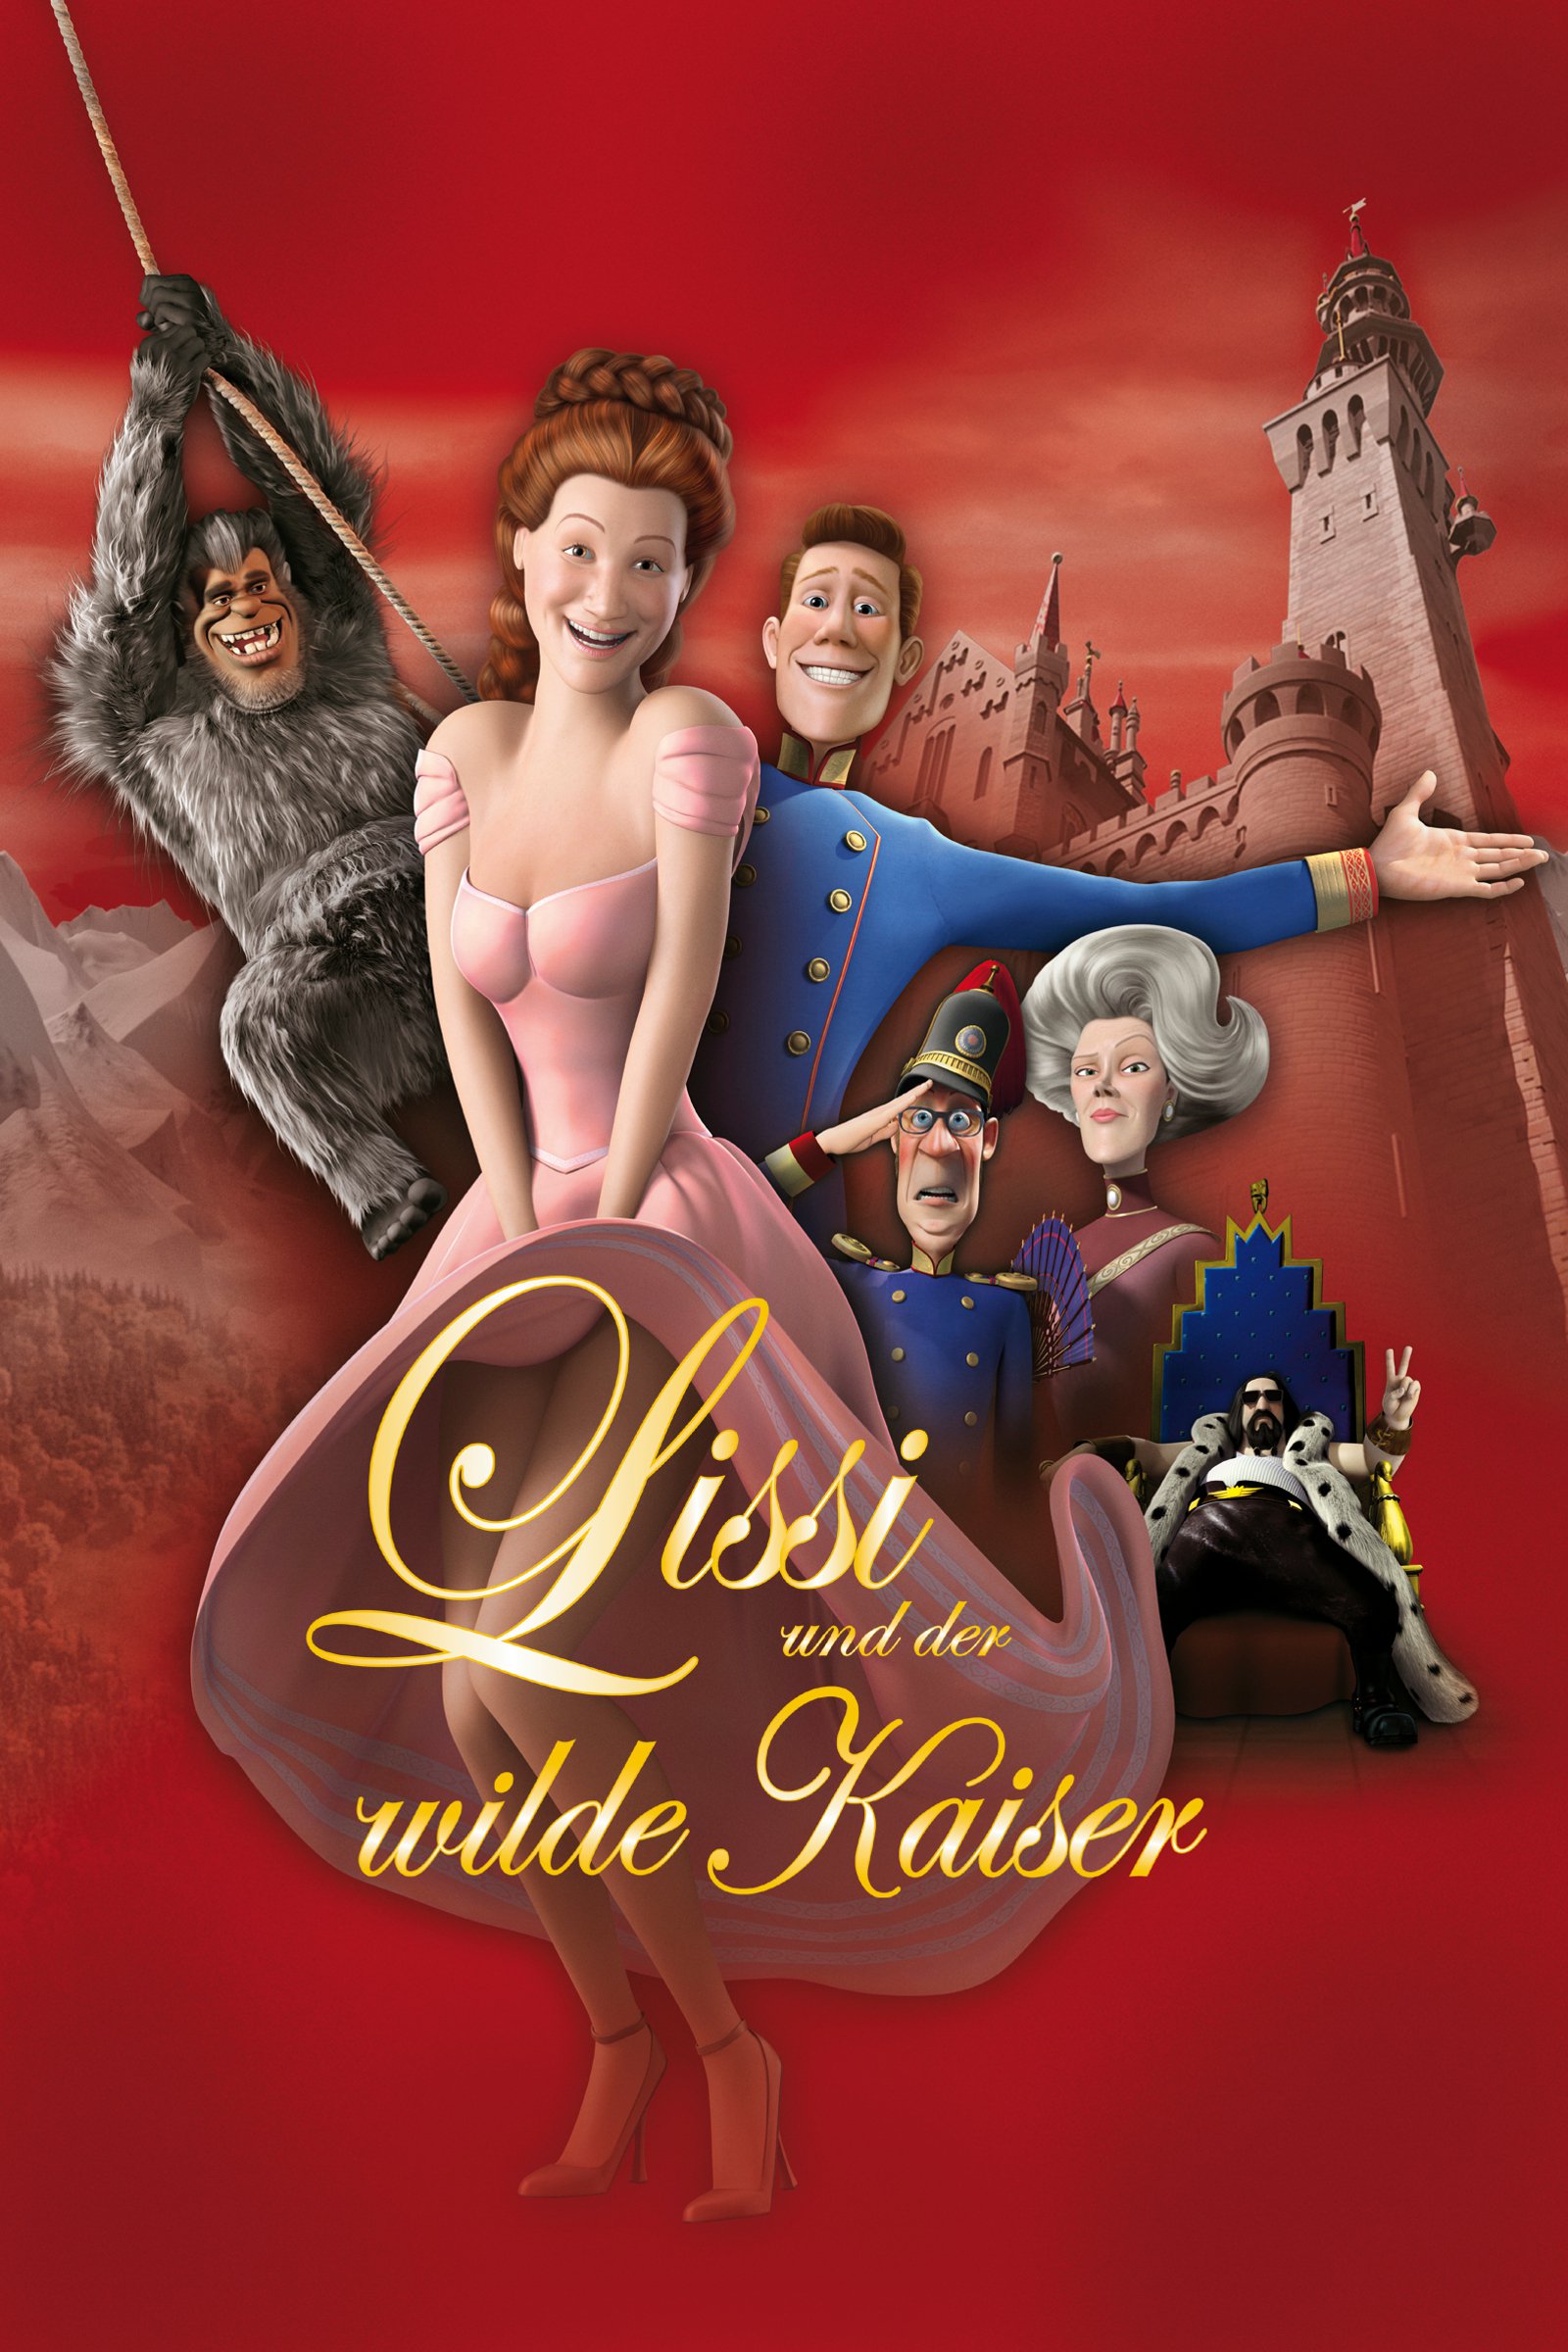 Plakat von "Lissi und der wilde Kaiser"